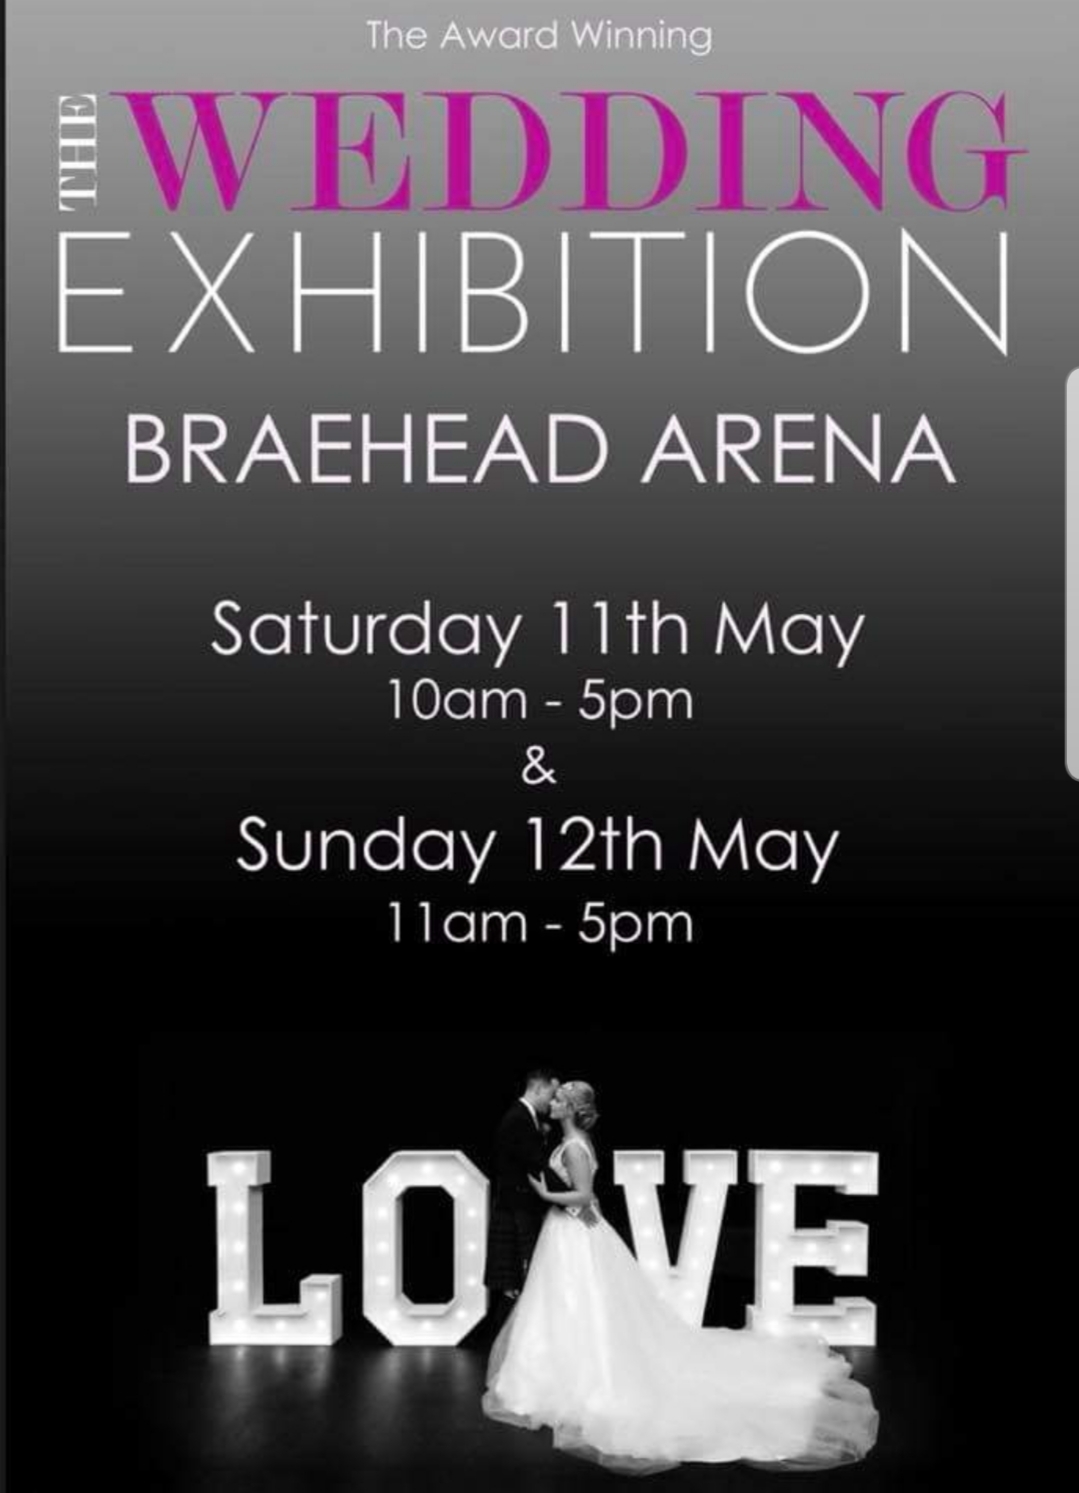 braehead exhibition 